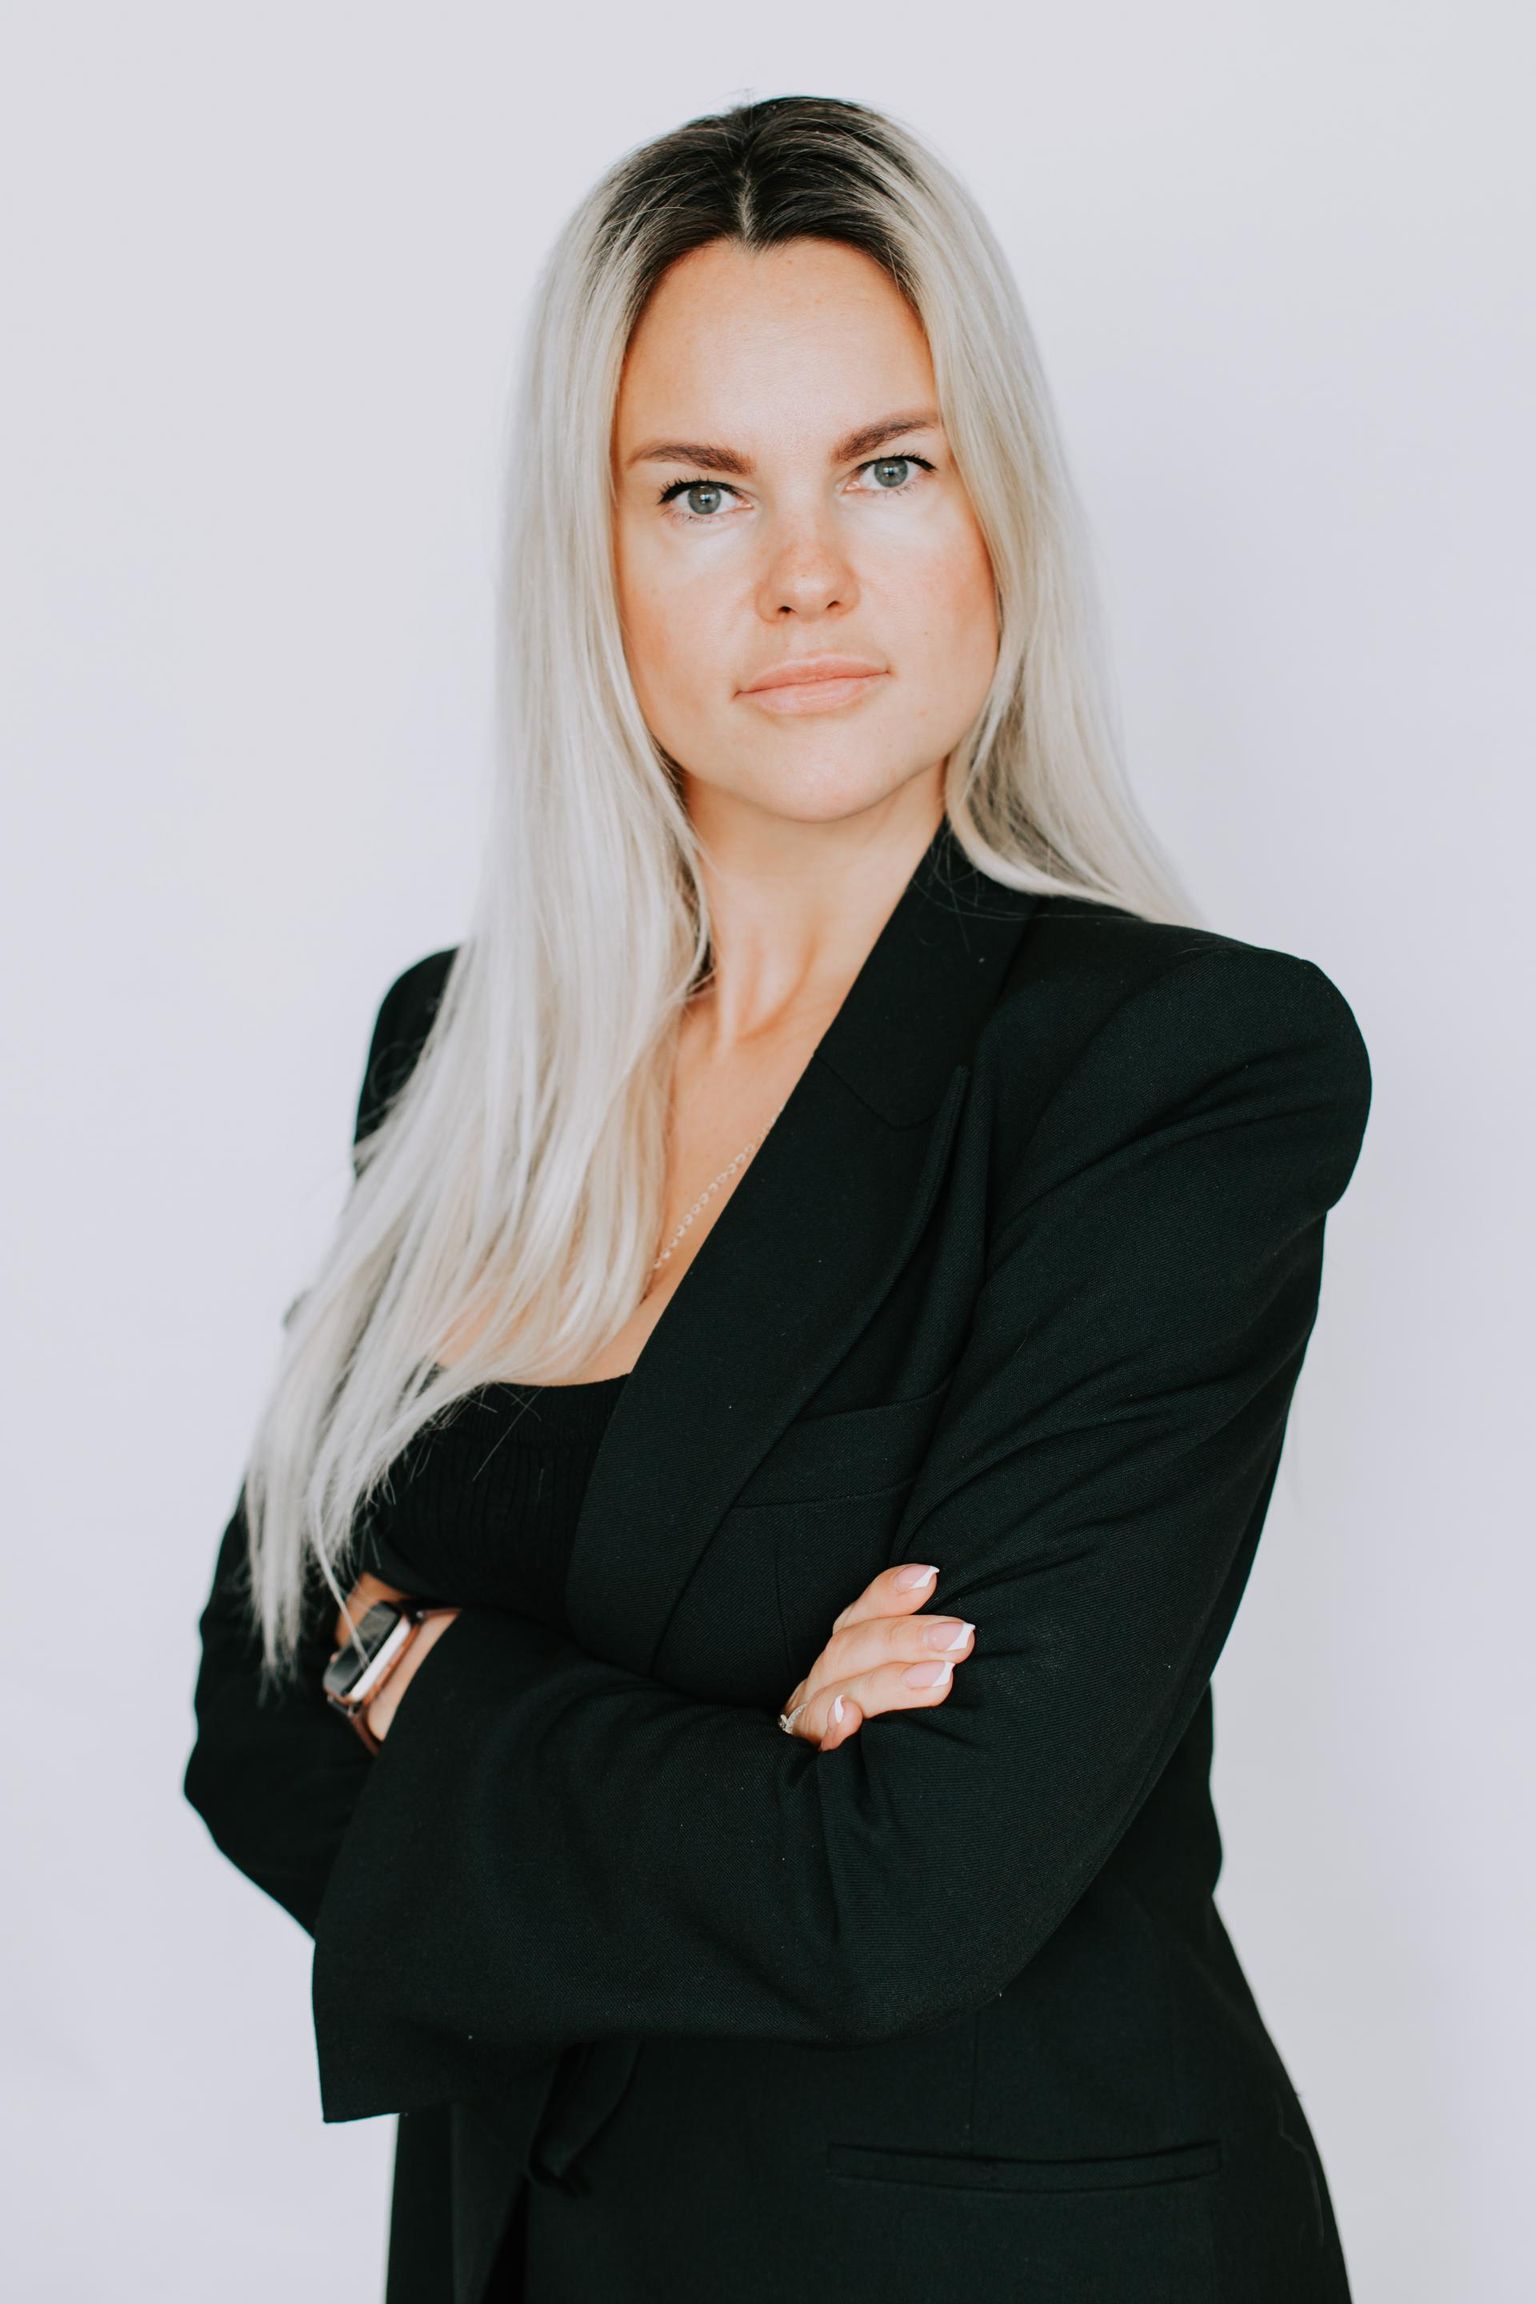 Kristina Mustonen töötas enne Maxima Eesti juhiks saamist Maxima Eestis ostujuhina, juhtis mitut osakonda ning viimasel viiel aastal oli kommertsosakonna juht ja juhatuse liige.